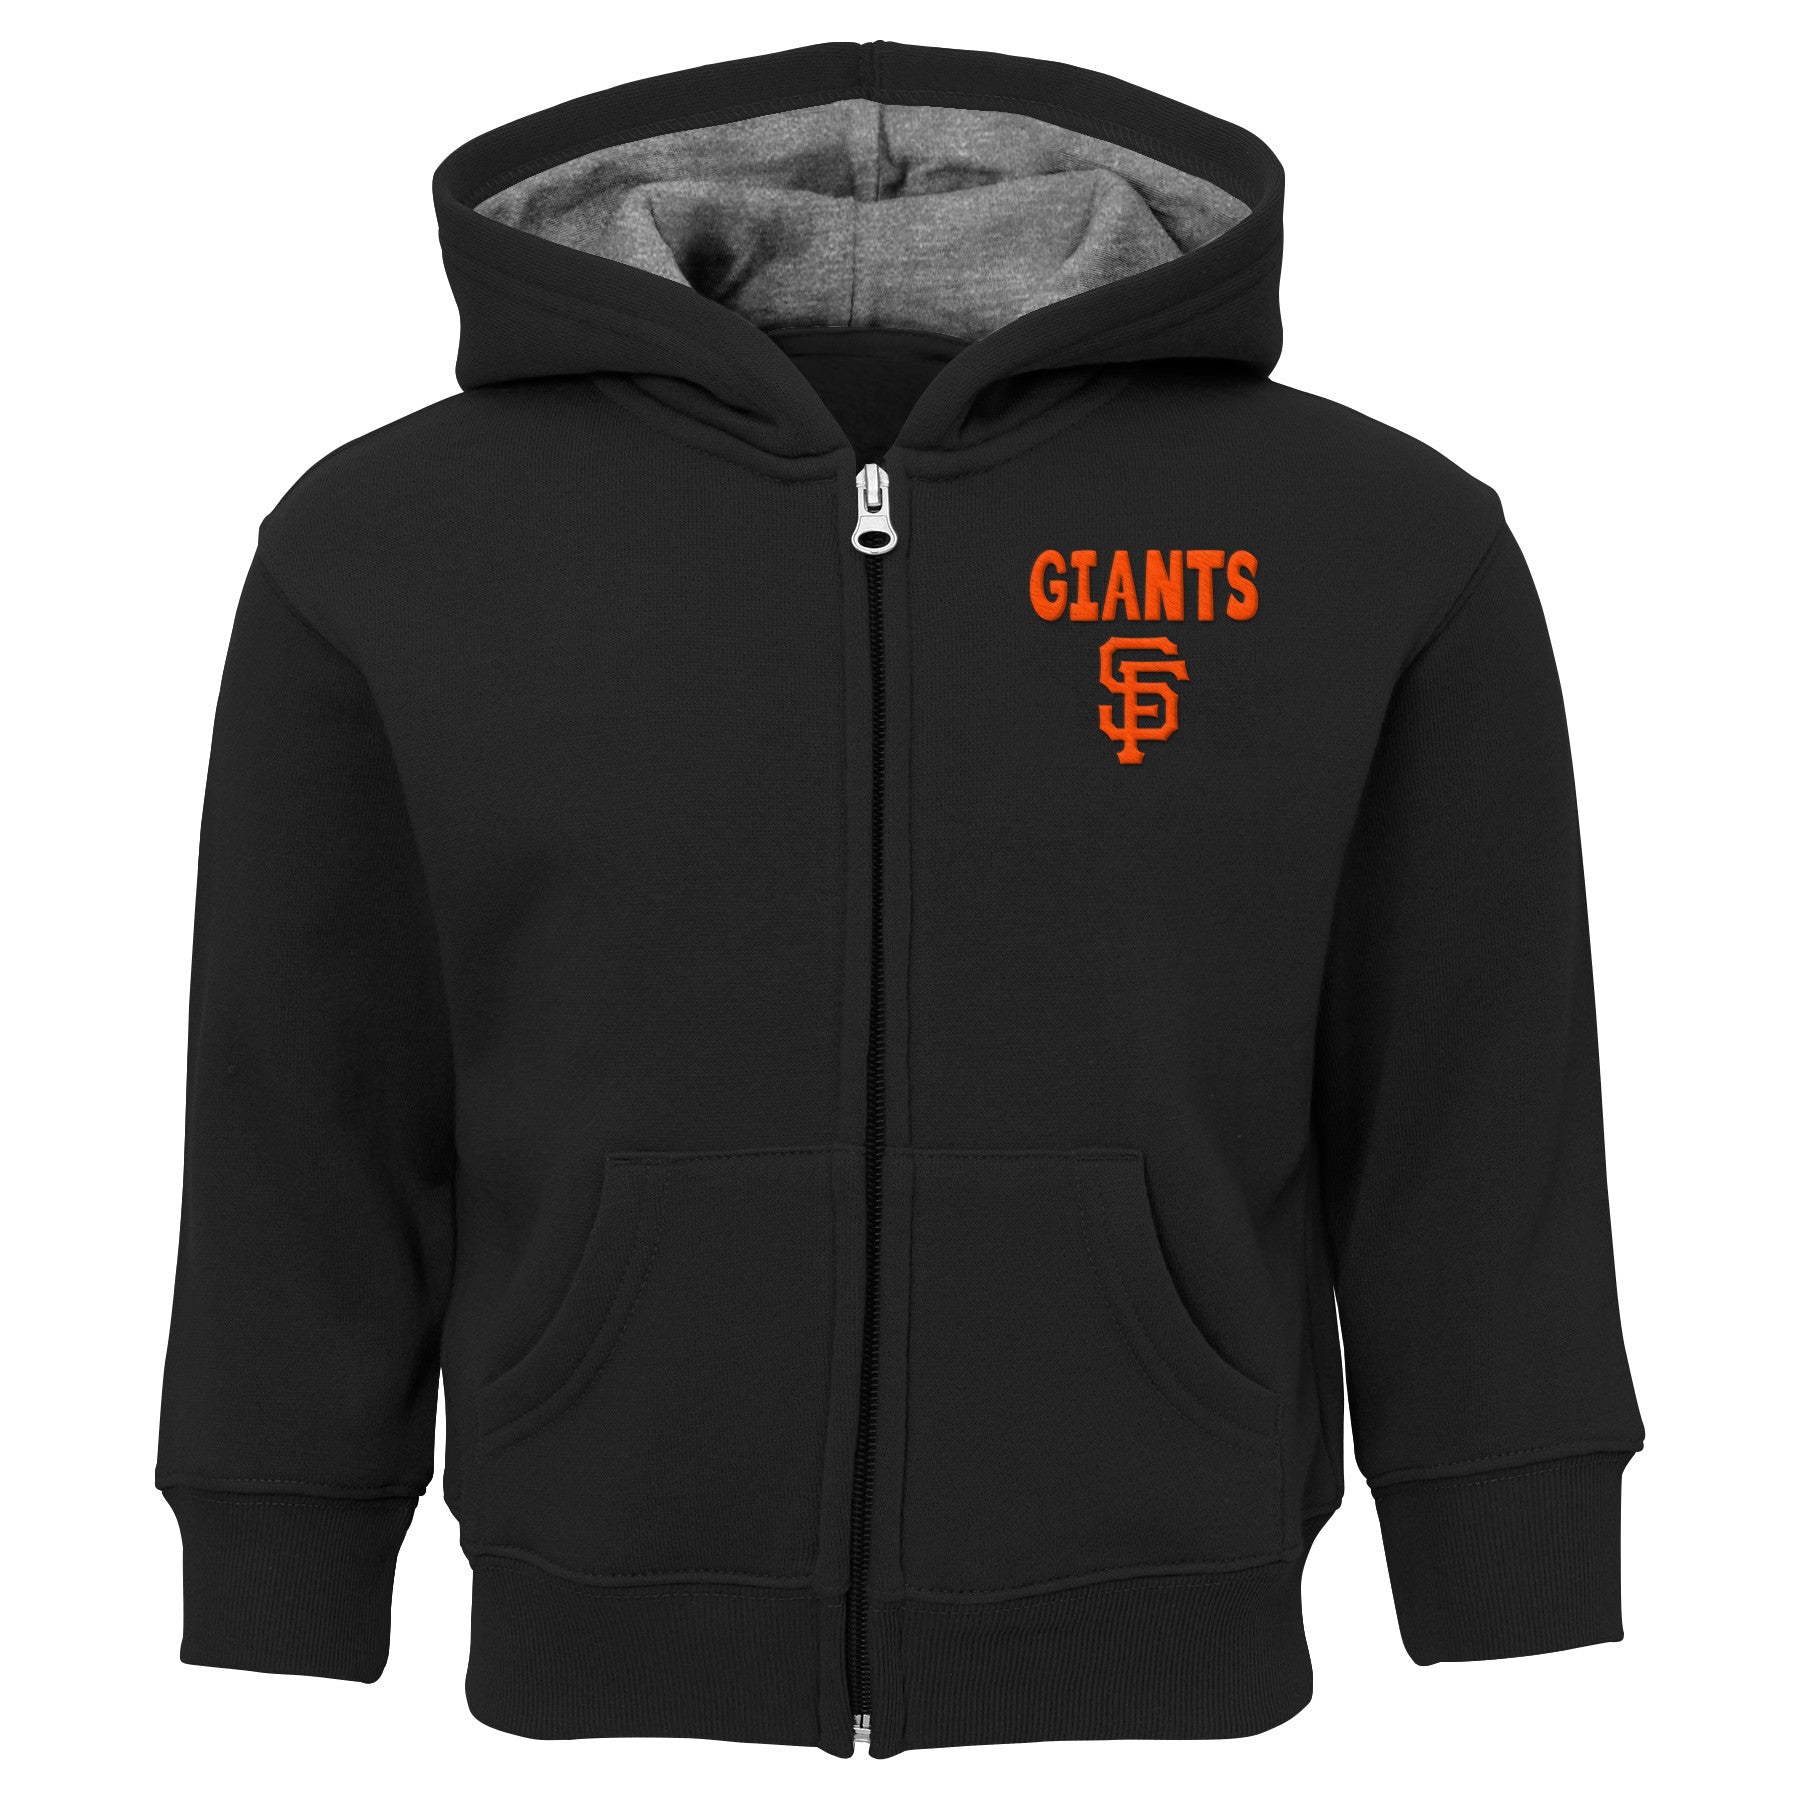 giants zip up hoodie